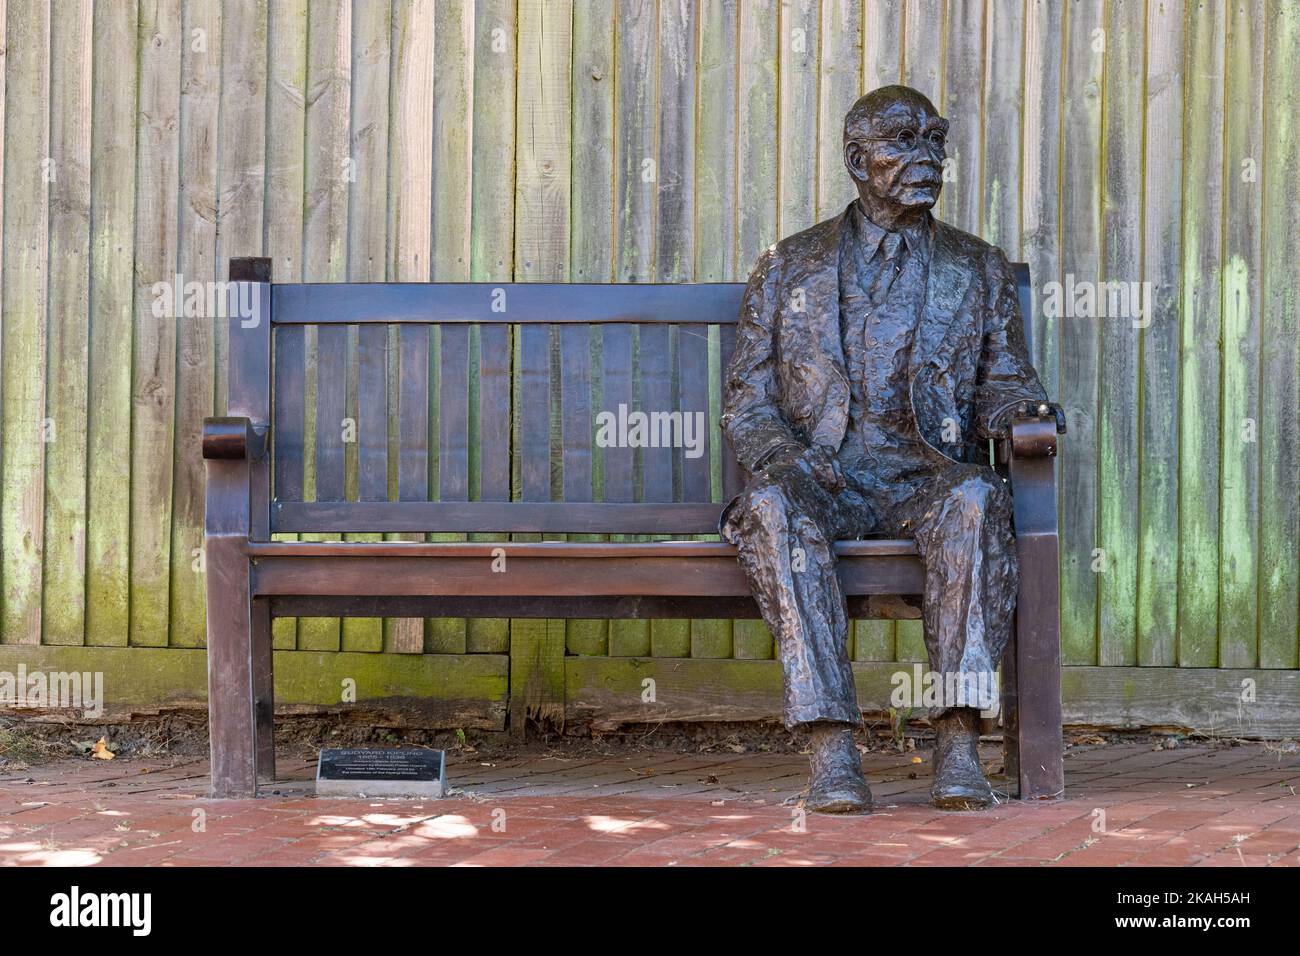 Statue grandeur nature de Rudyard Kipling de Victoria Atkinson assise sur un banc à Burwash, East Sussex, Angleterre, Royaume-Uni Banque D'Images